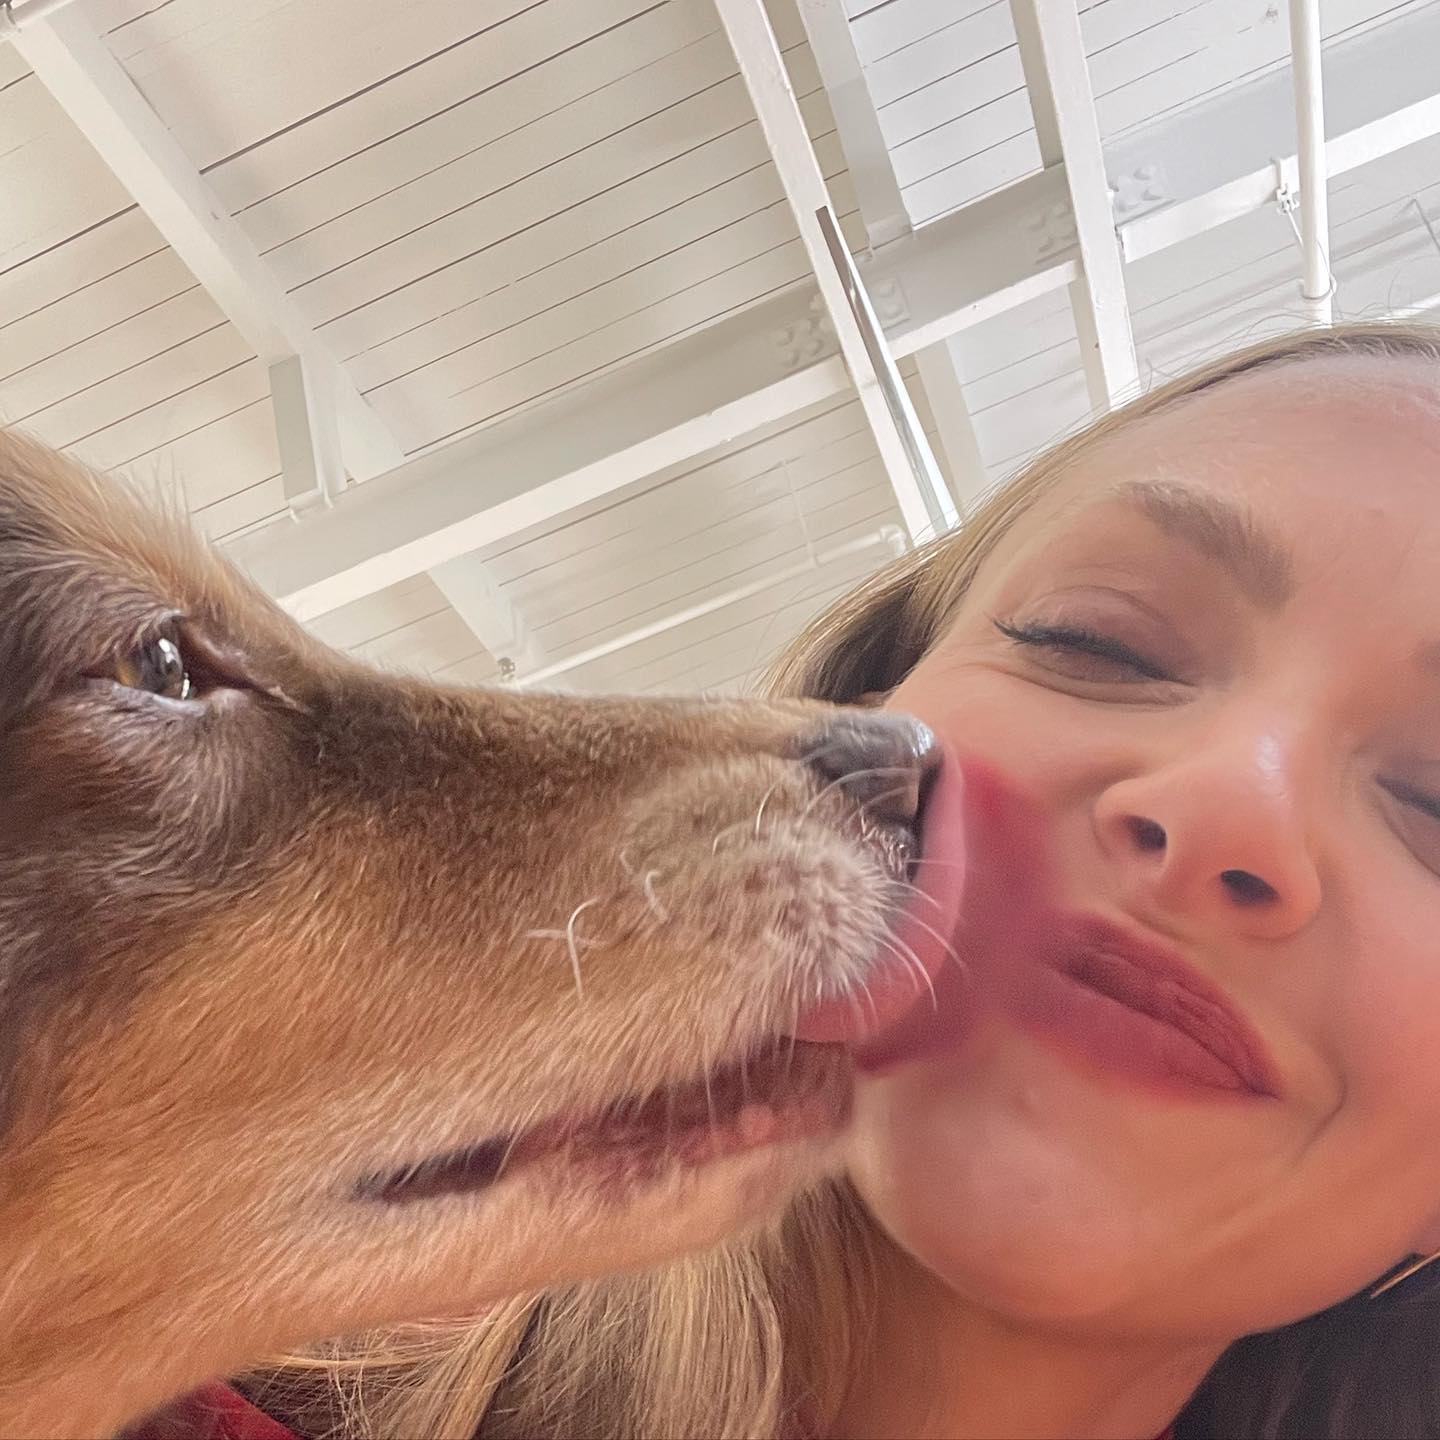 La actriz Amanda Seyfried en un selfie con su perro mientras le lame la cara